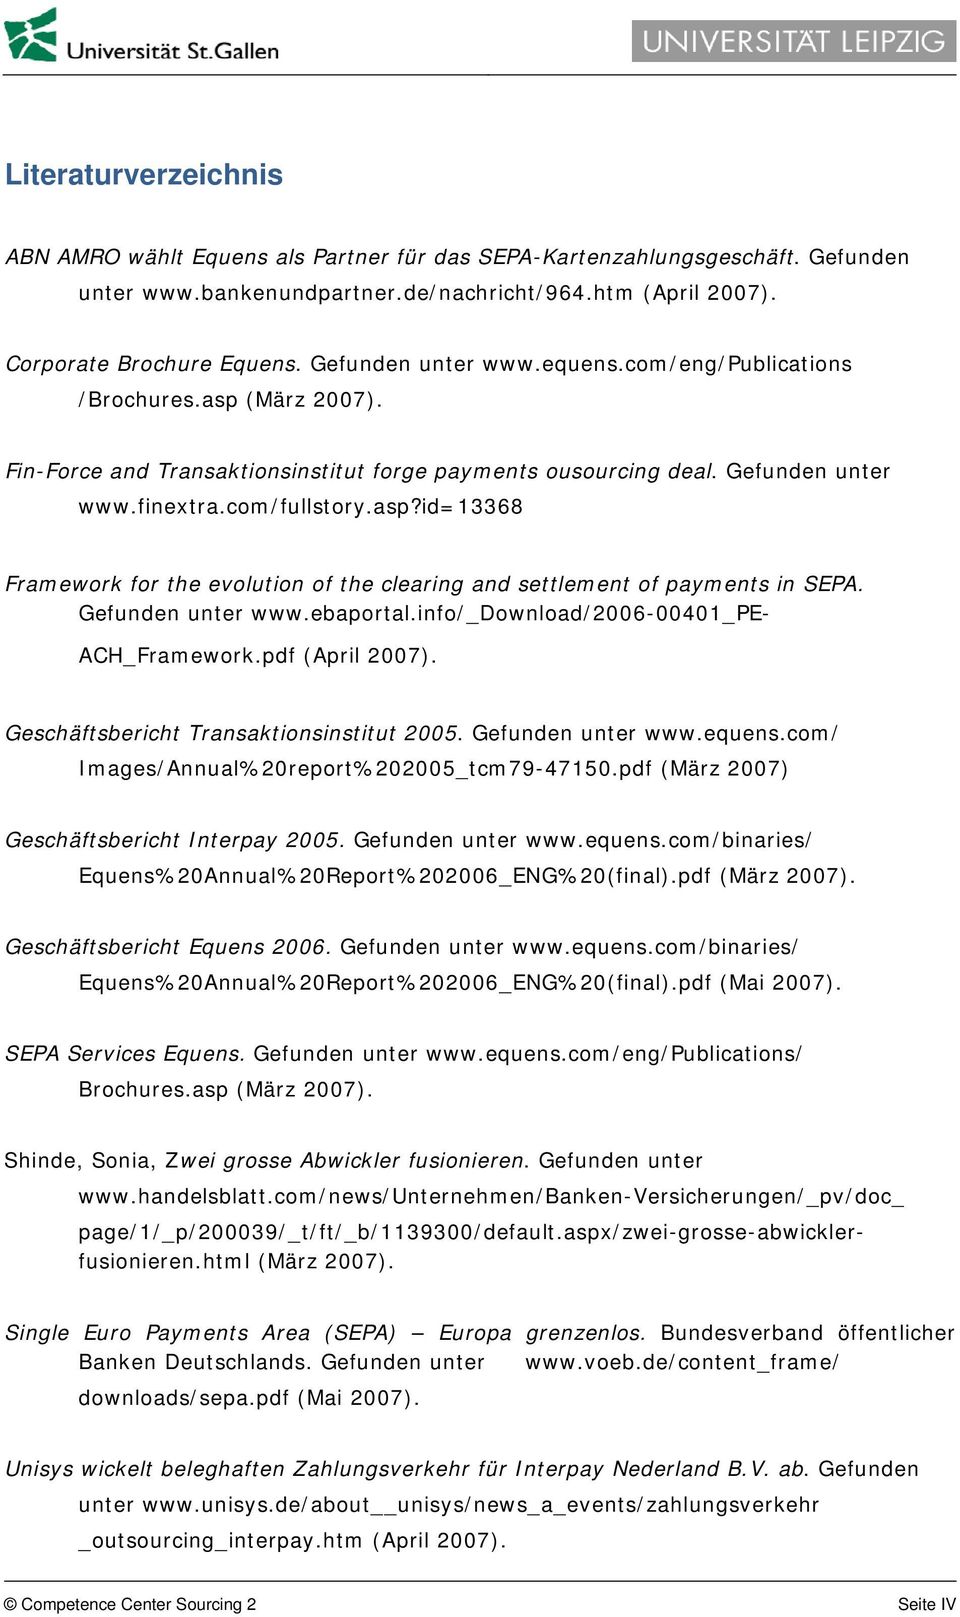 Gefunden unter www.ebaportal.info/_download/2006-00401_pe- ACH_Framework.pdf (April 2007). Geschäftsbericht Transaktionsinstitut 2005. Gefunden unter www.equens.